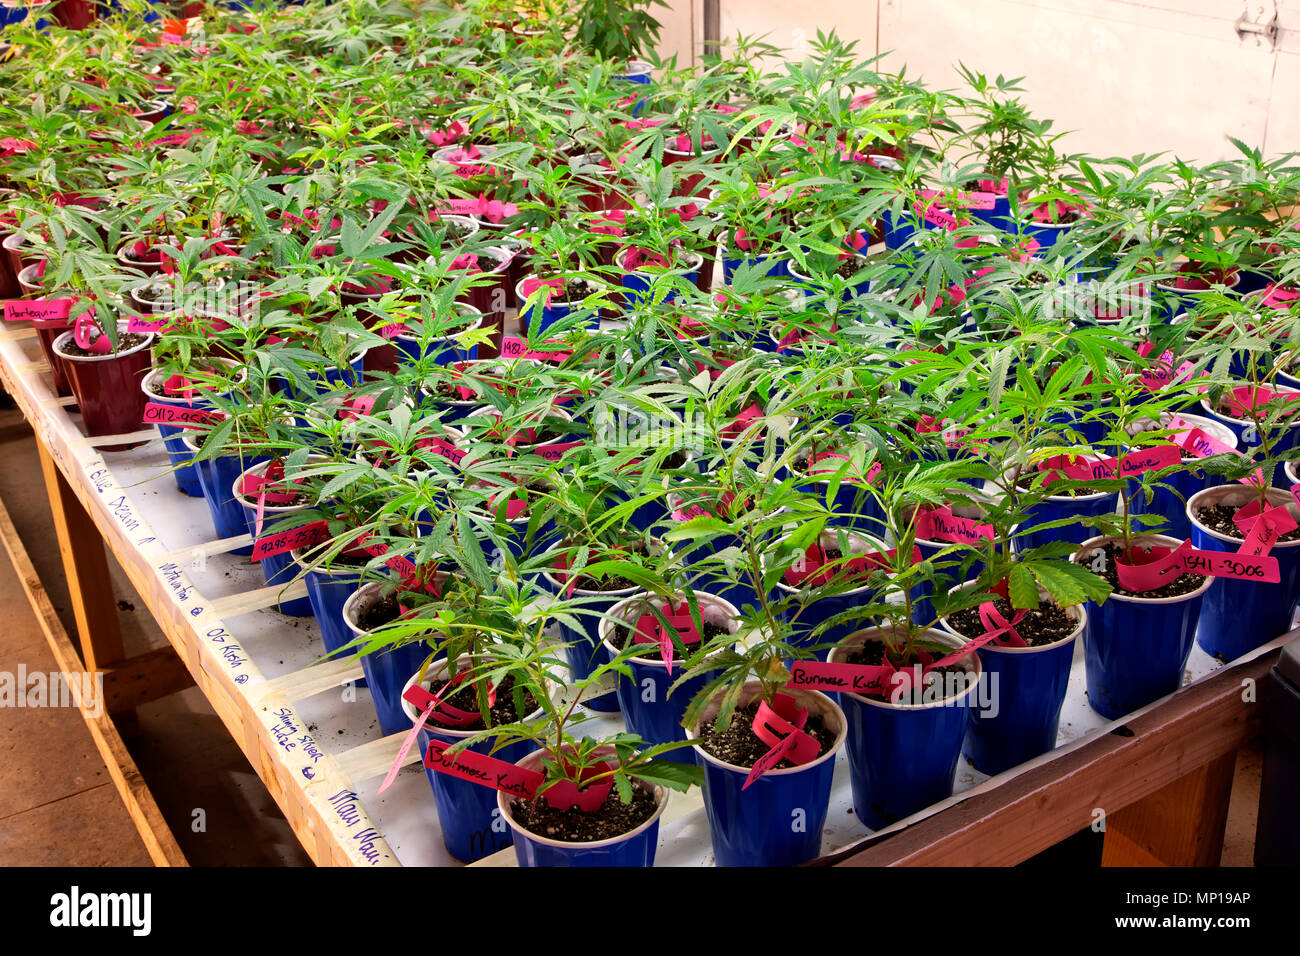 Los jóvenes 'Cannabis sativa' las plantas que crecen en contenedores, la iluminación artificial, vivero, granja de malezas, Estado de Washington. Foto de stock